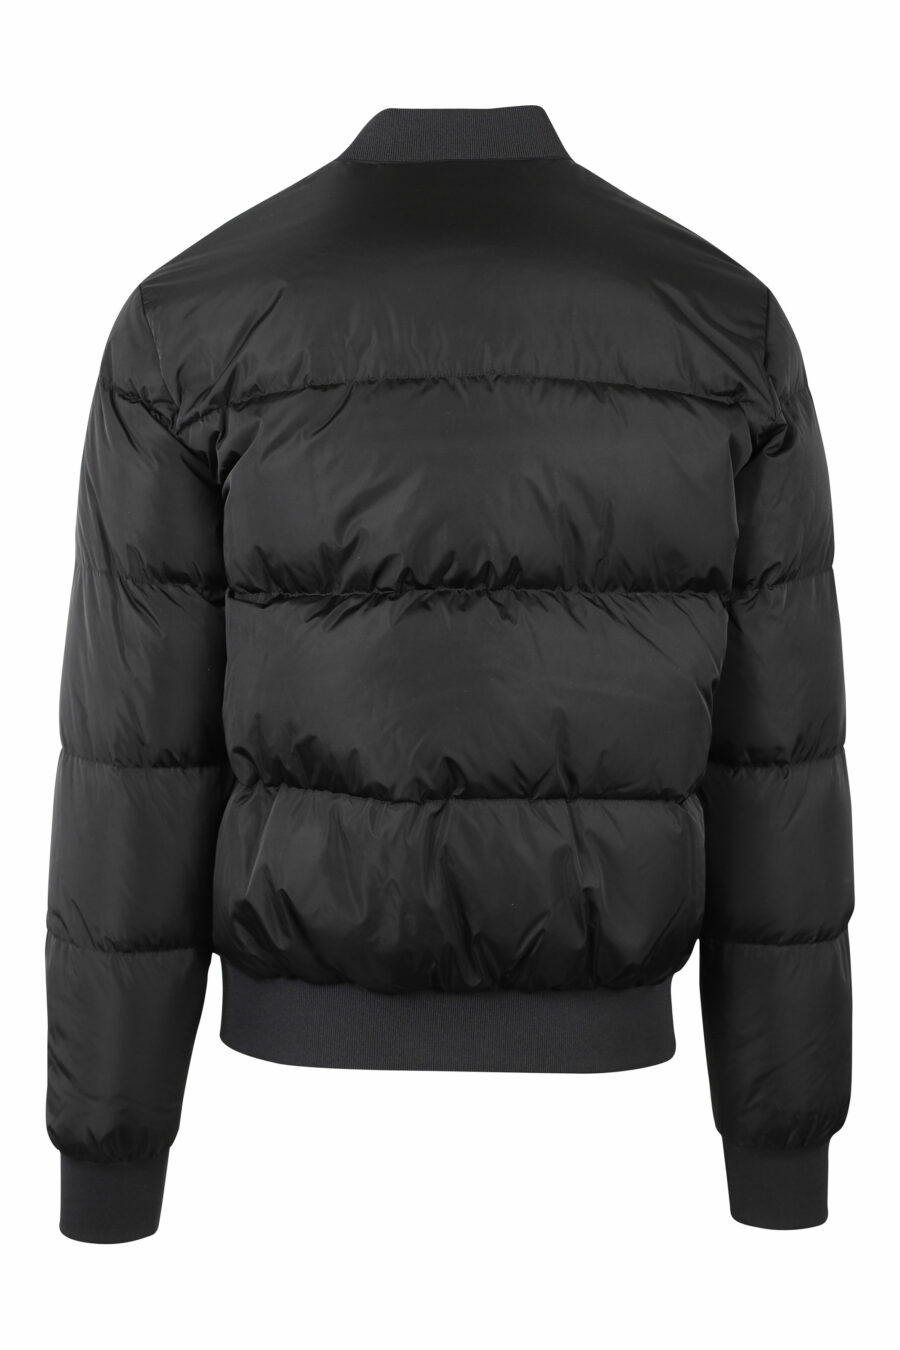 Schwarze Jacke mit schwarzem Logo - IMG 0769